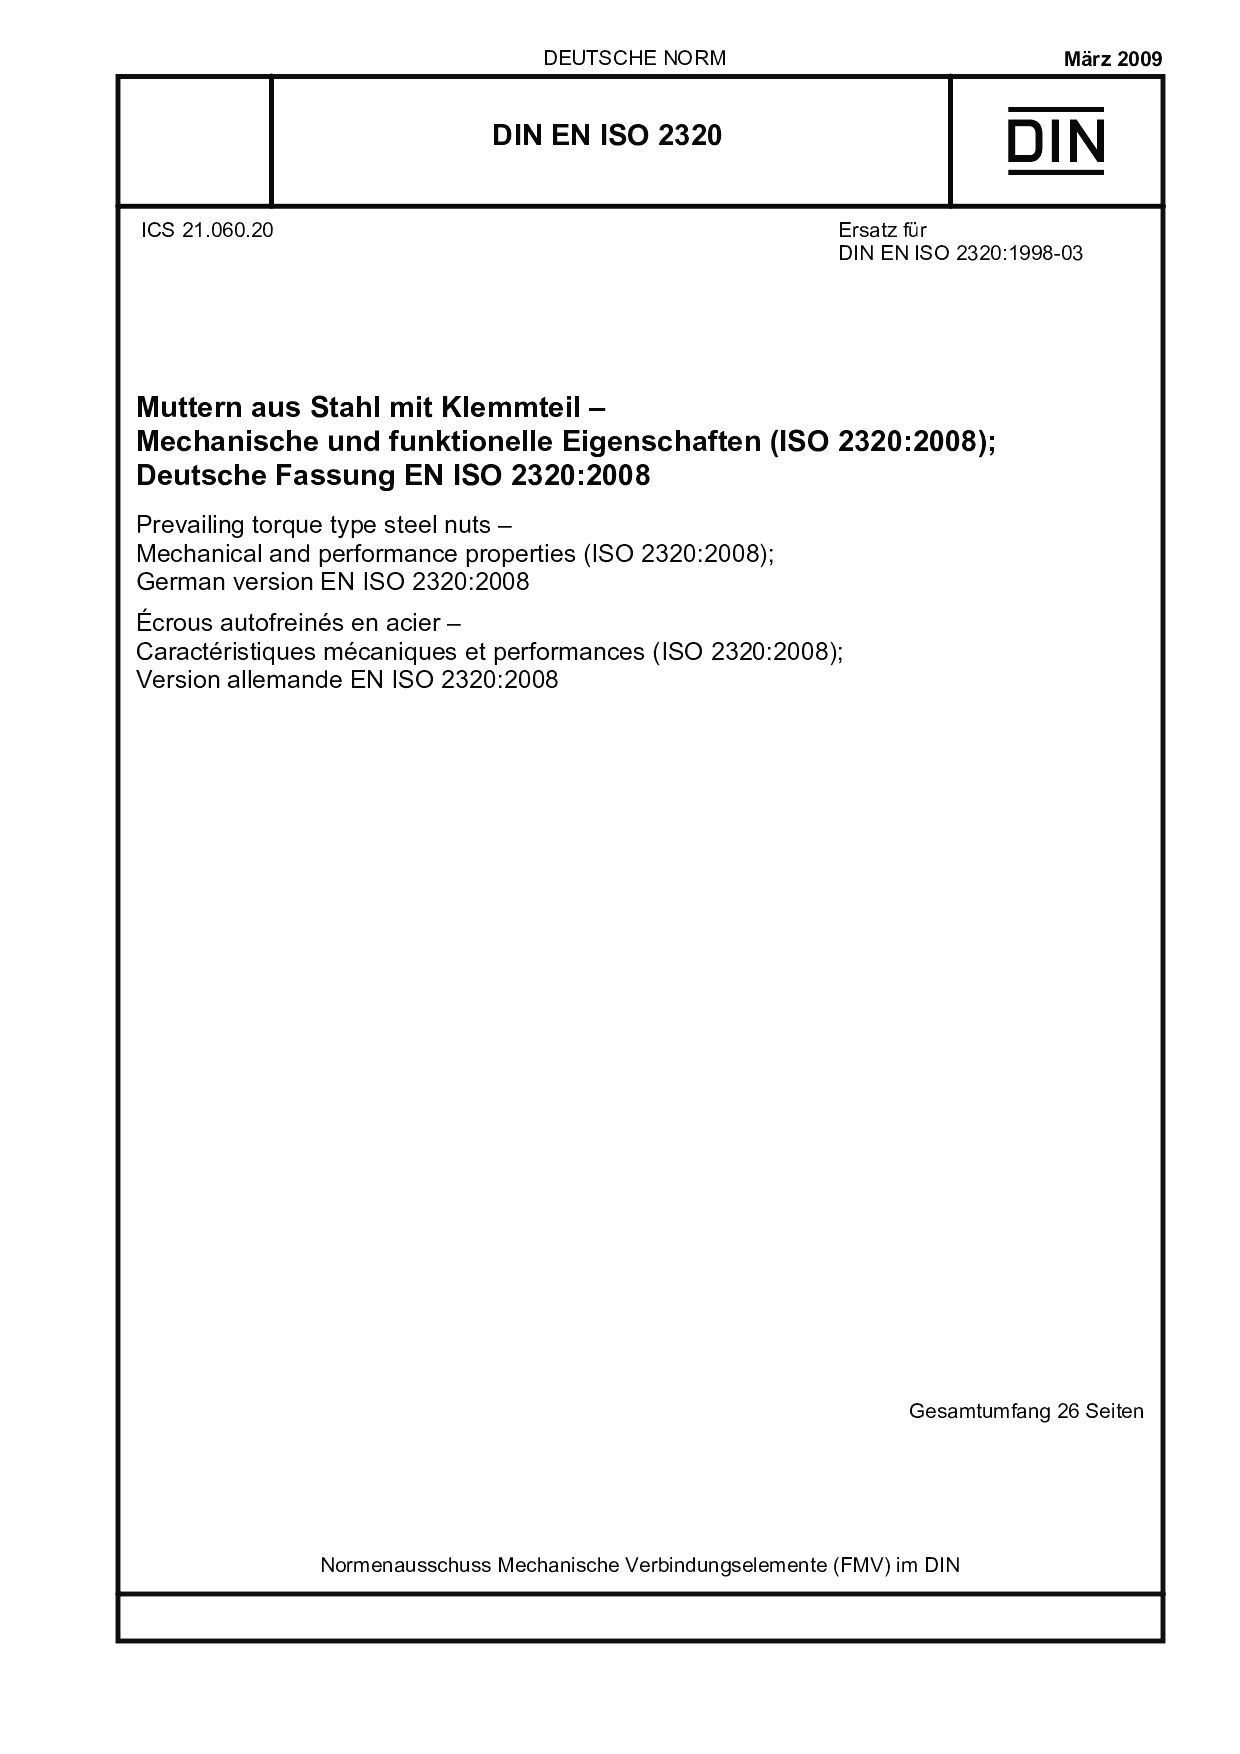 DIN EN ISO 2320:2009